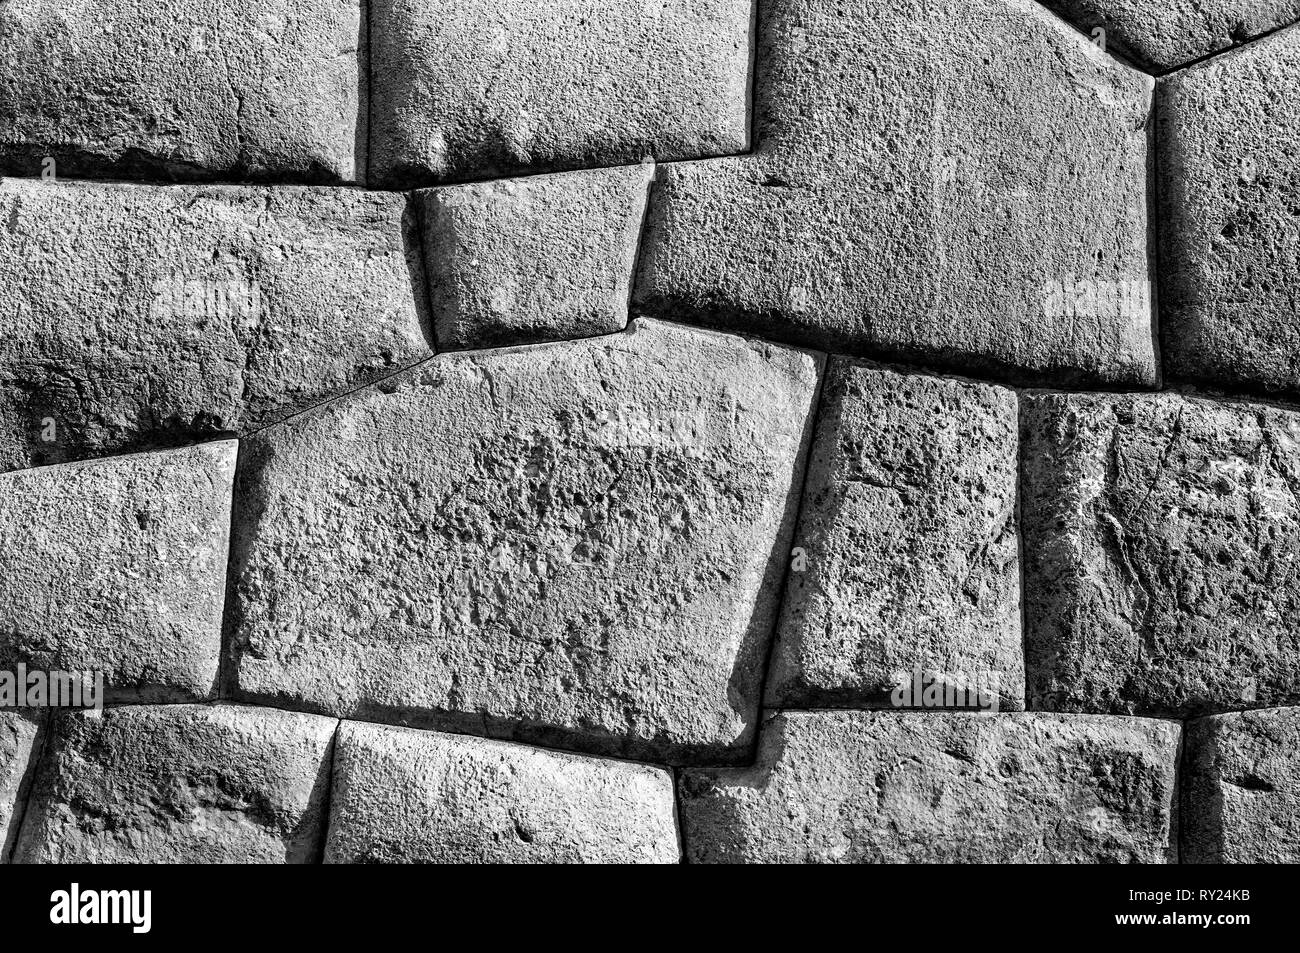 Photographie en noir et blanc d'un mur Inca dans les ruines archéologiques de Sacsayhuaman à Cusco, Pérou. Banque D'Images